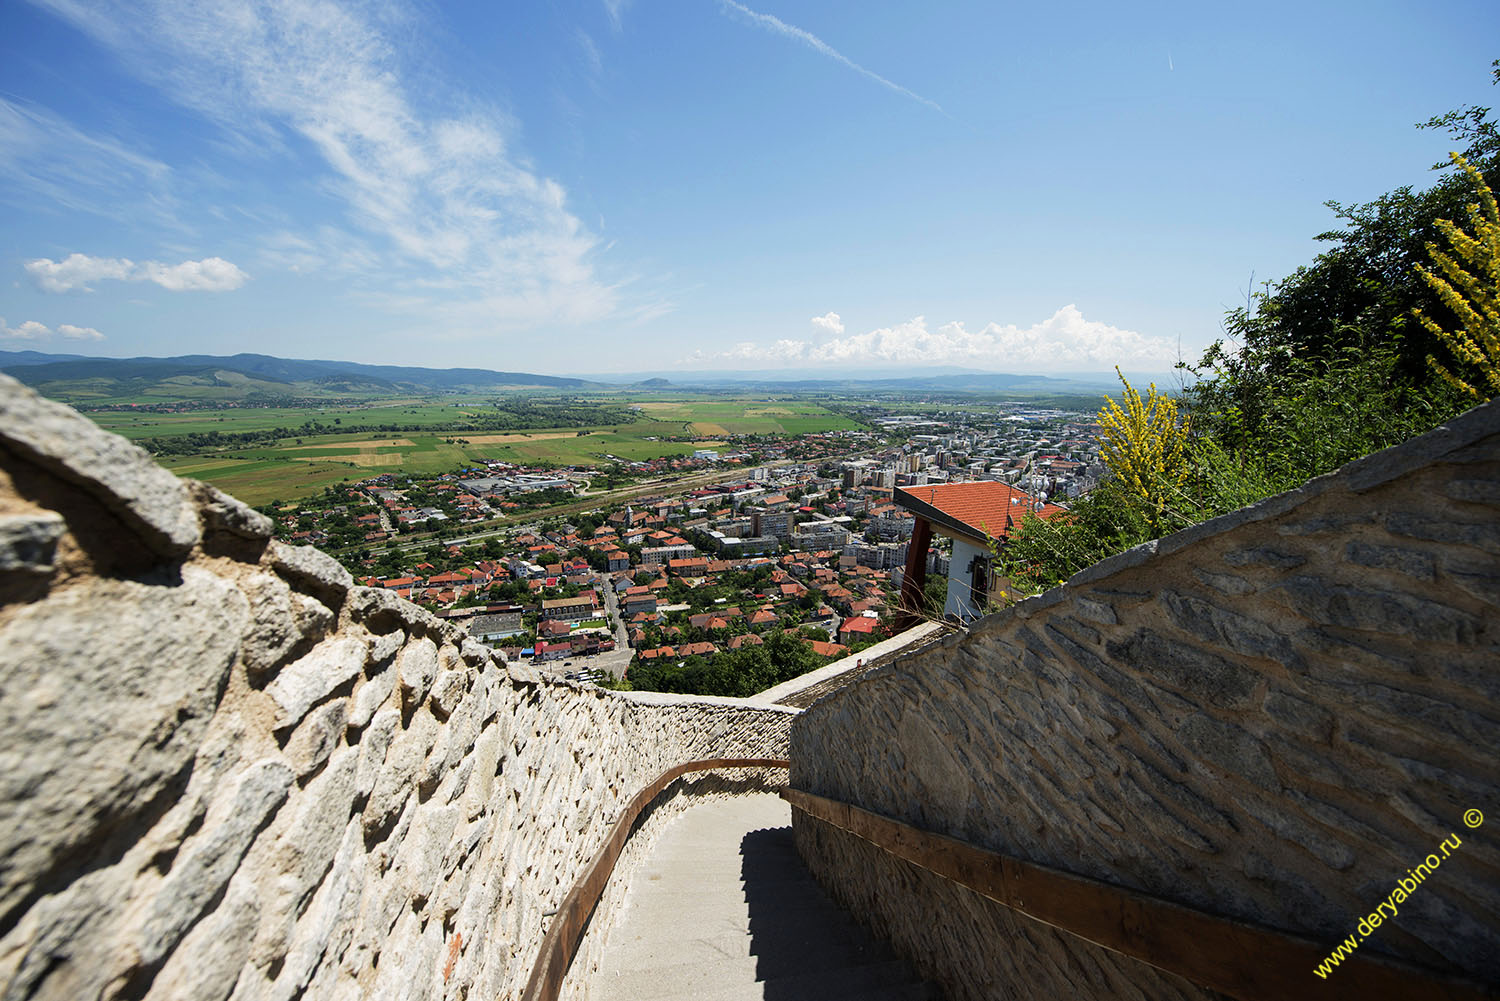    Fortress of Deva Romania